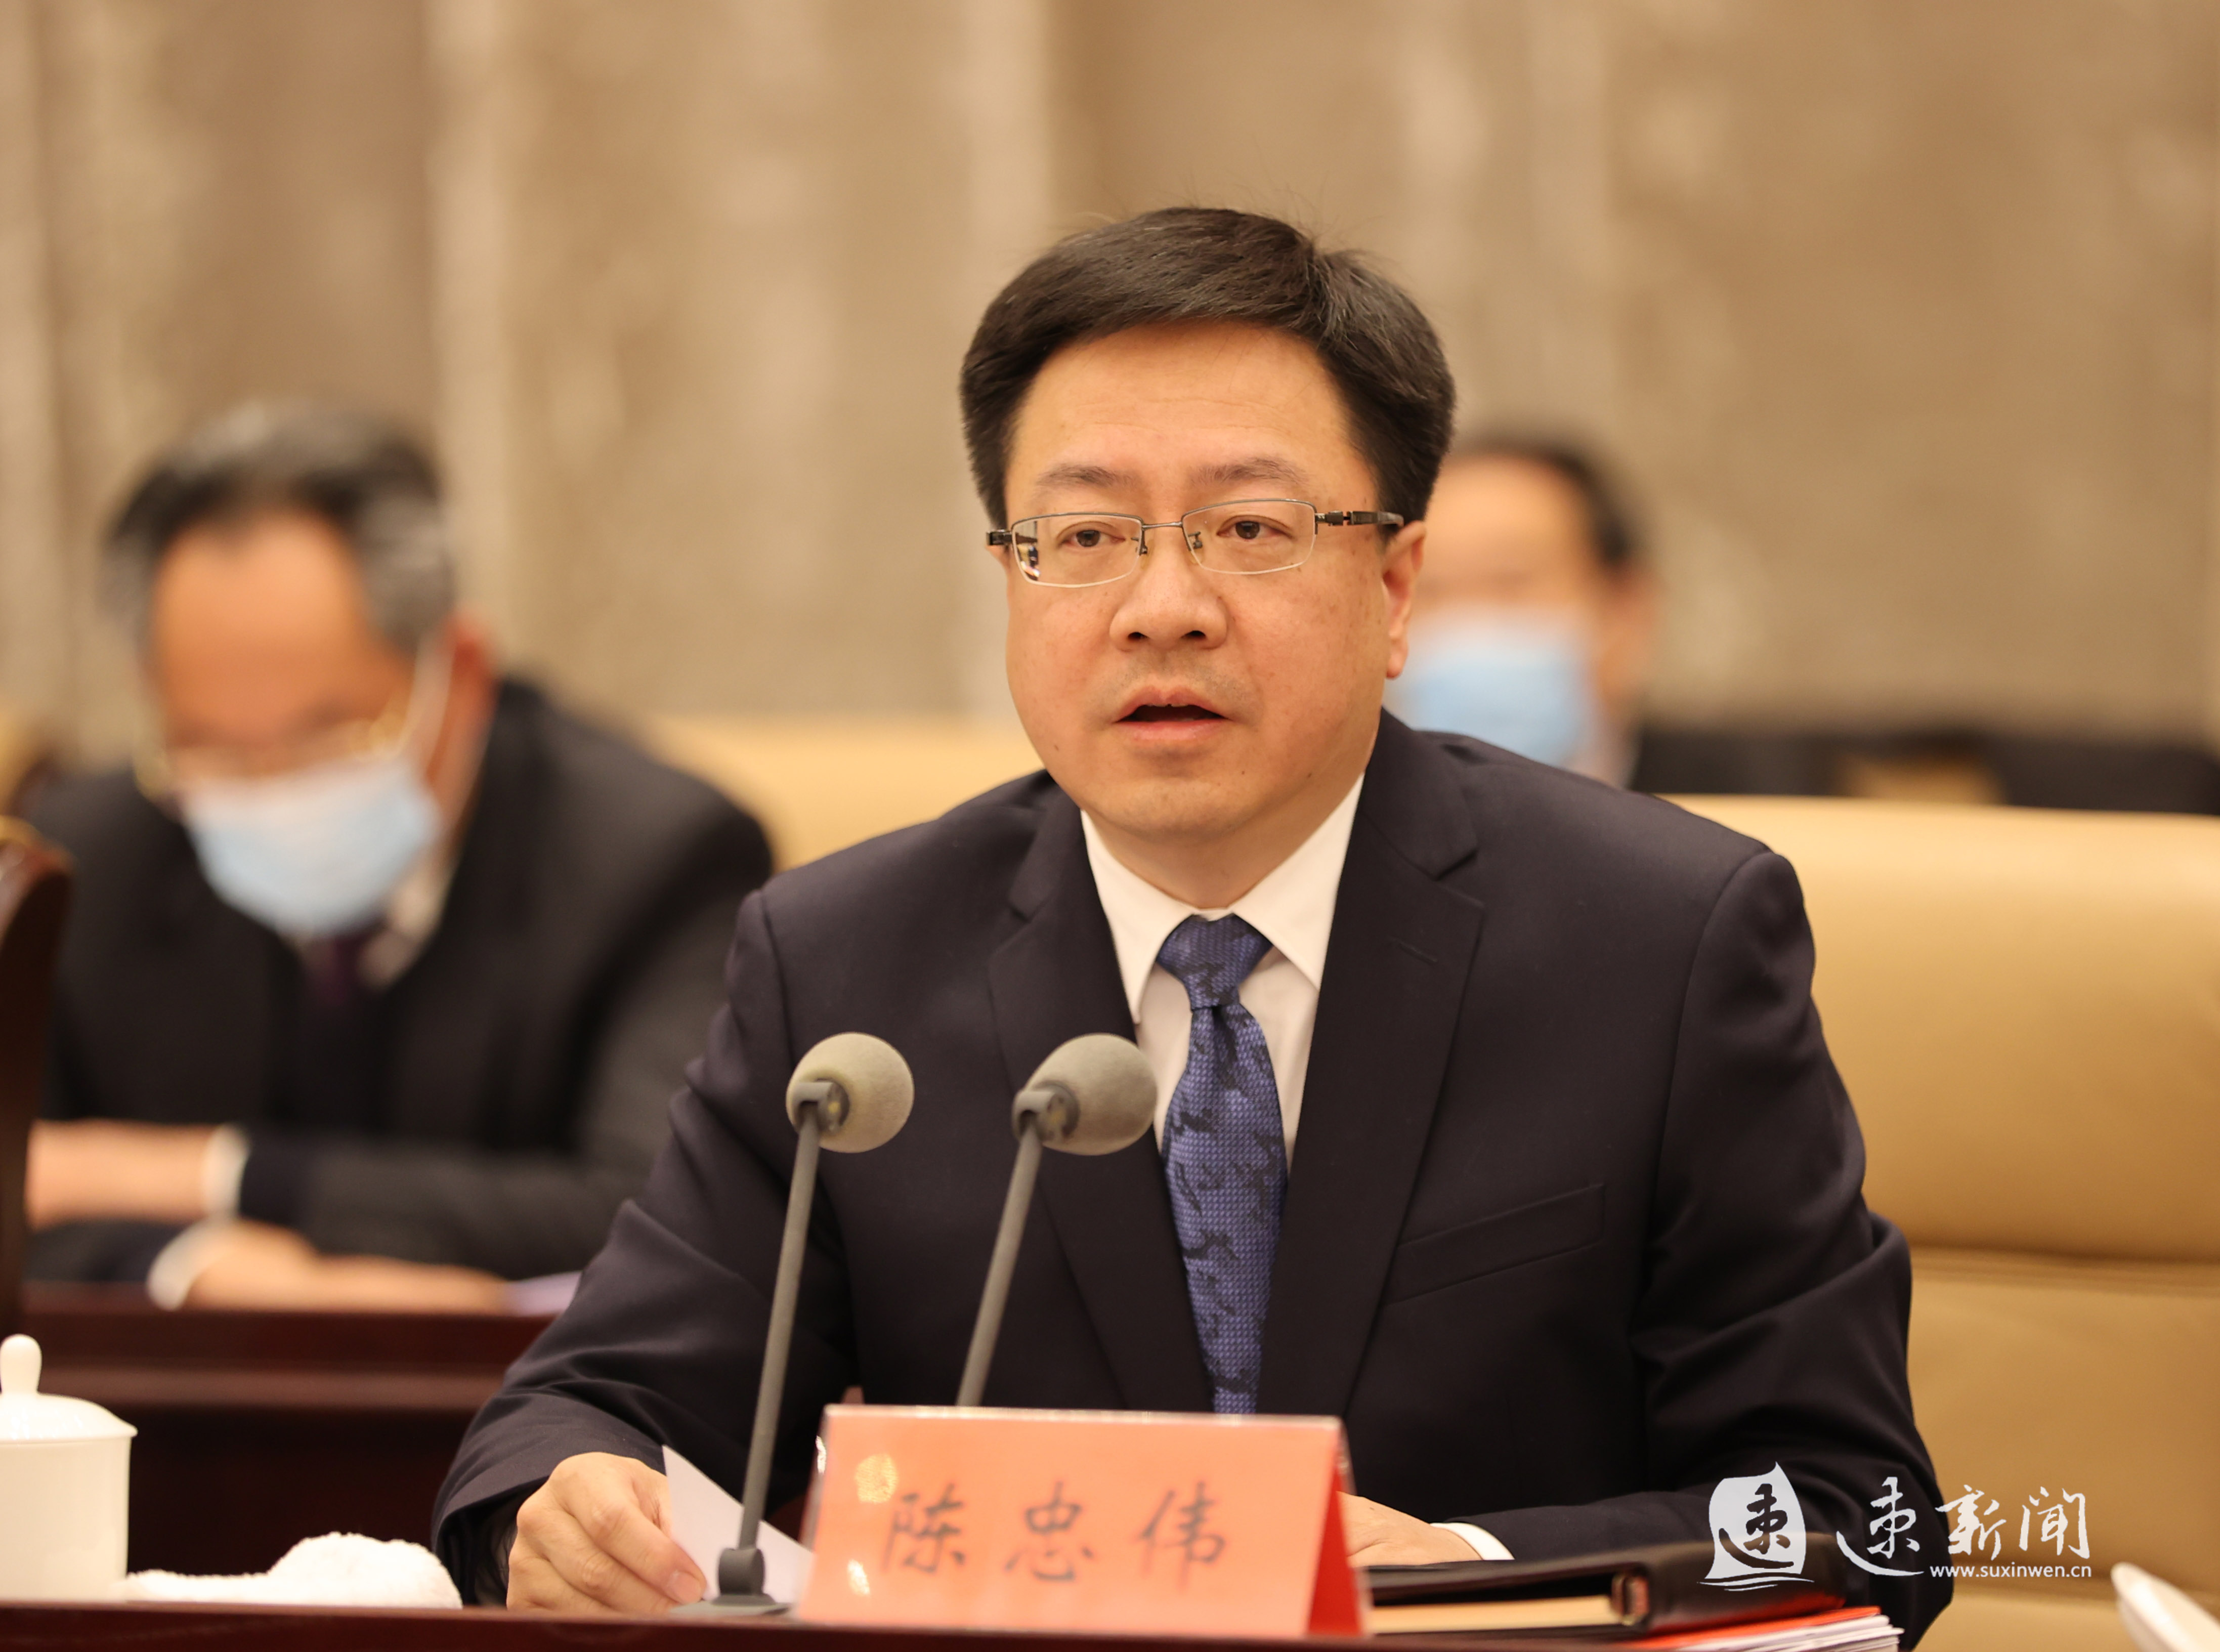 上,市委副书记,市长陈忠伟就加强综合考核引领高质量发展作了部署安排